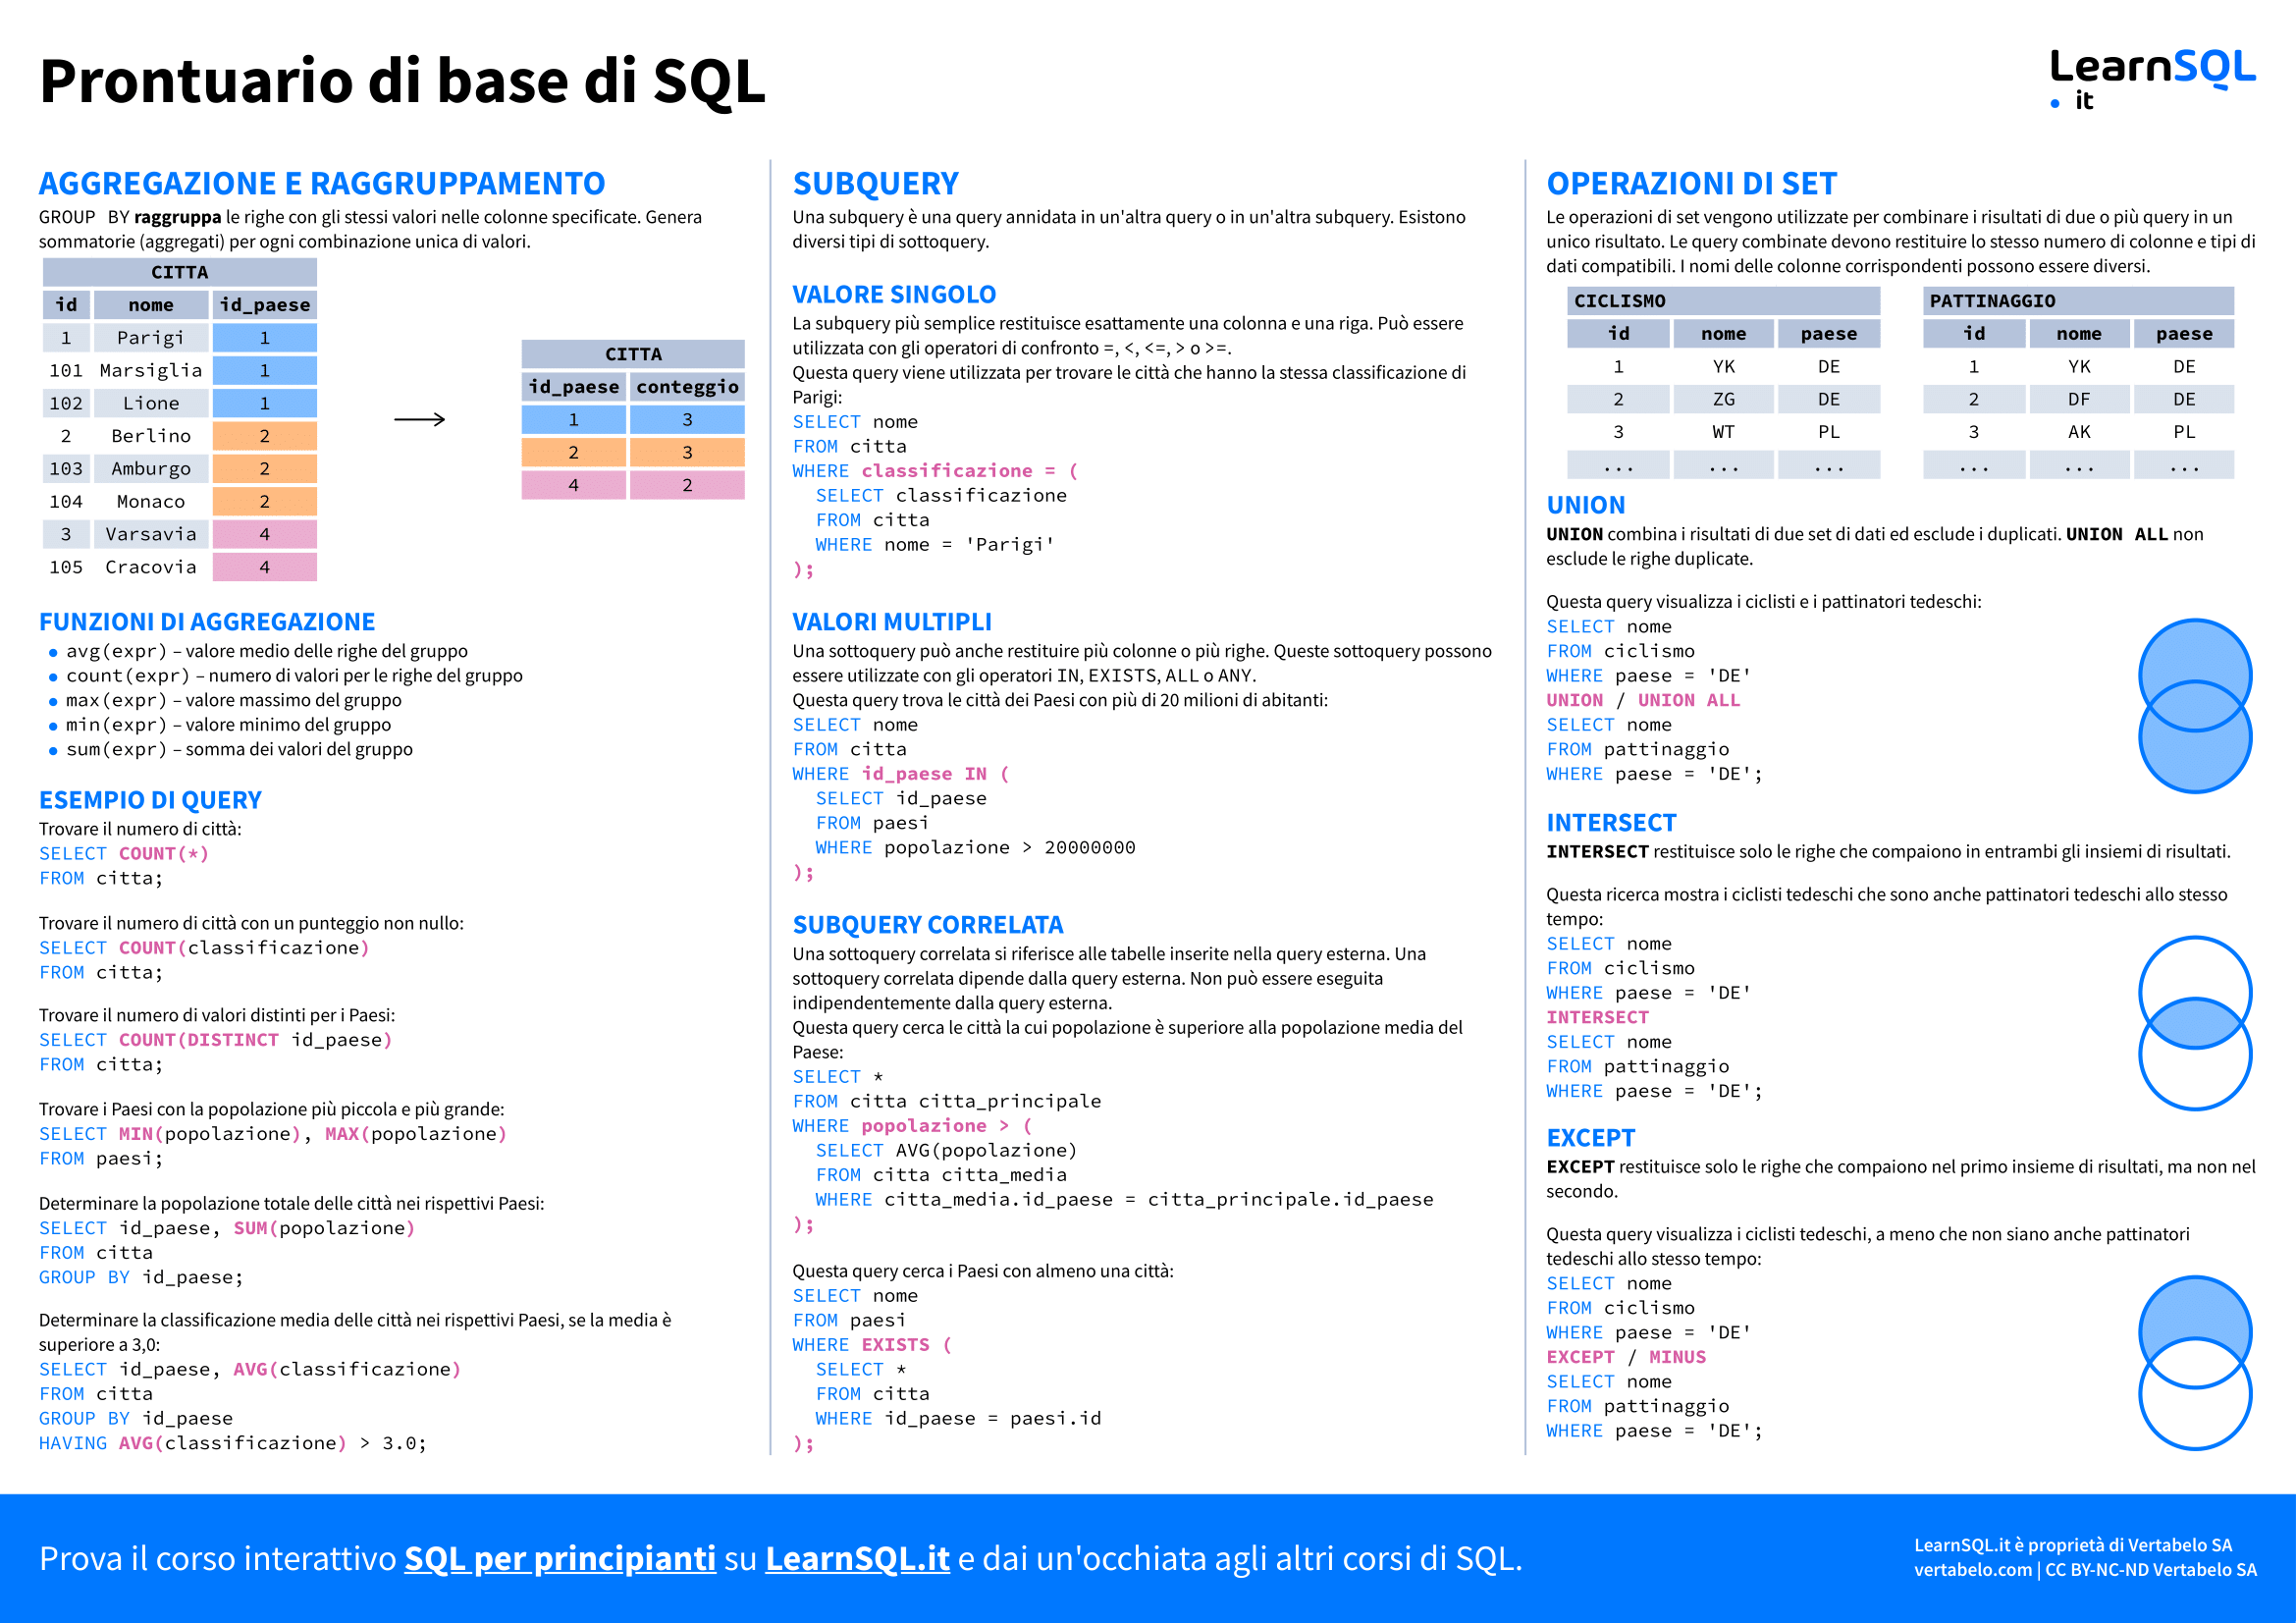 Seconda pagina del prontuario sulle basi di SQL 